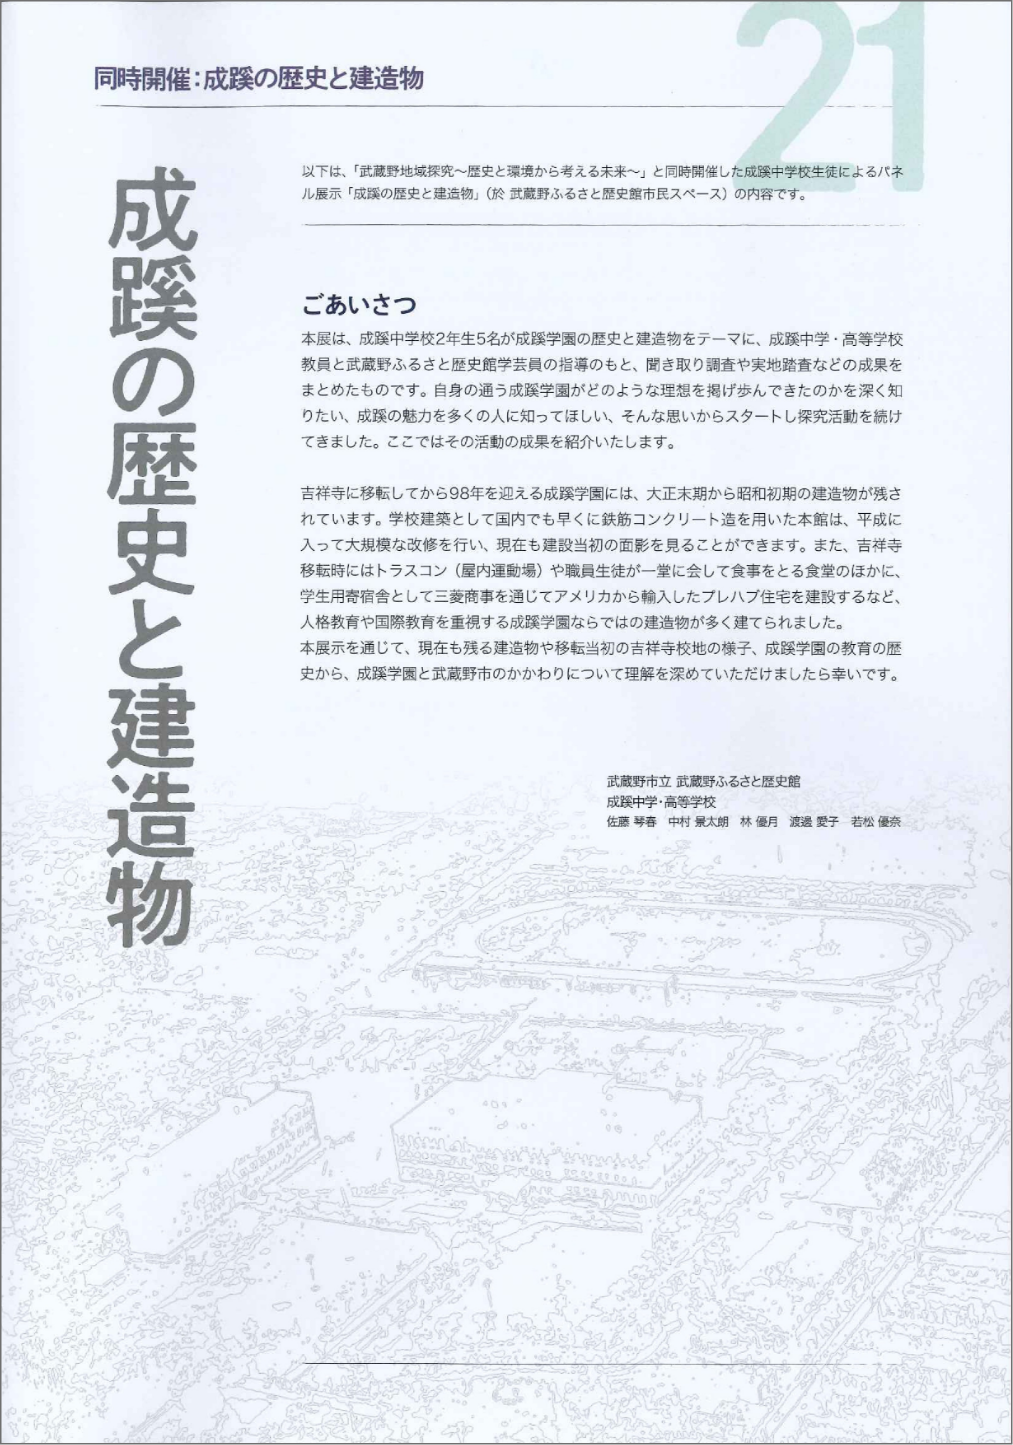 「武蔵野ふるさと歴史館展示「成蹊の歴史と建造物」」